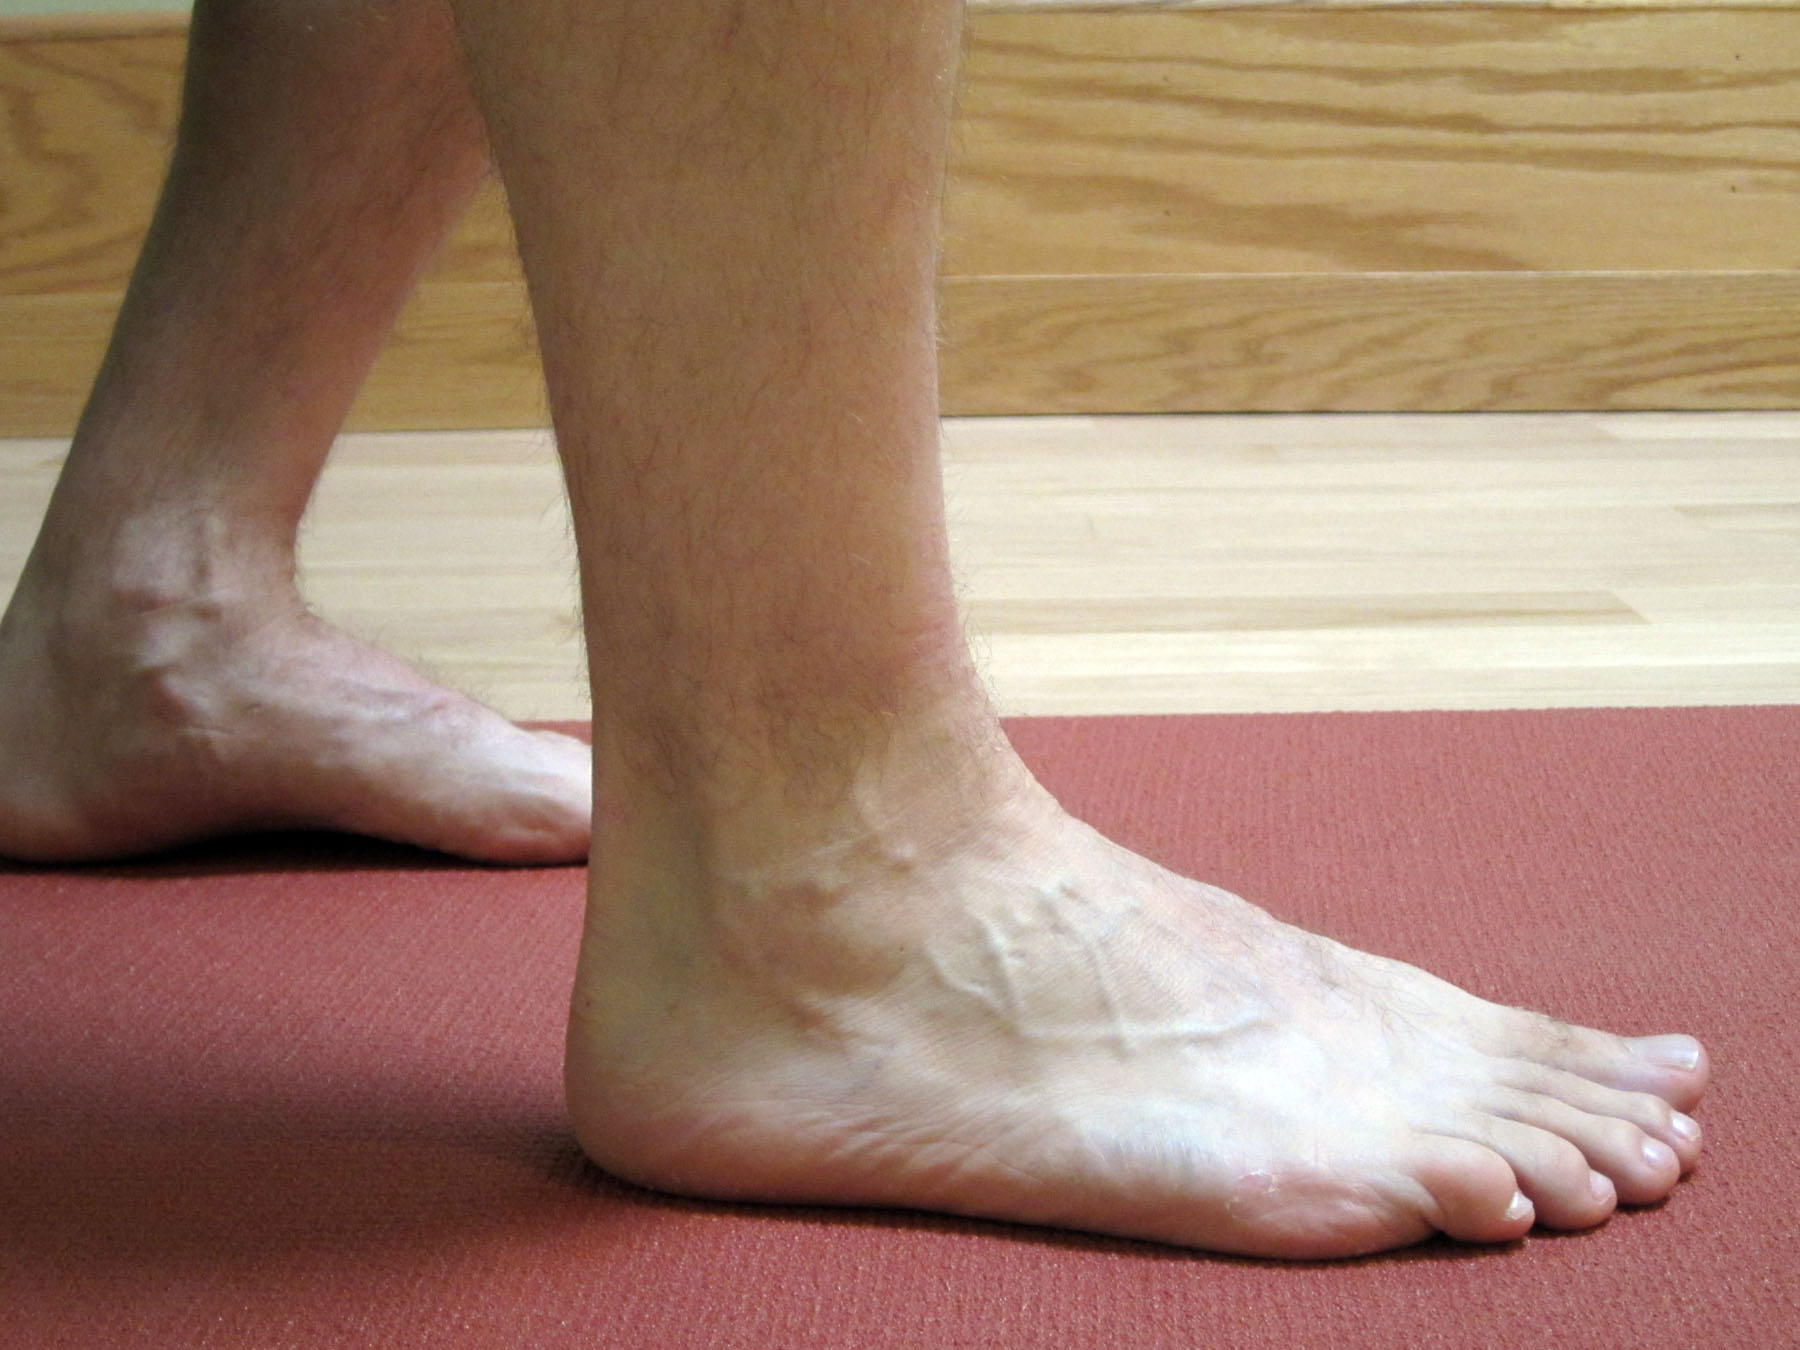 Голеностопный сустав левой ноги. Припухлость на щиколотке. Повреждения голеностопа ноги.